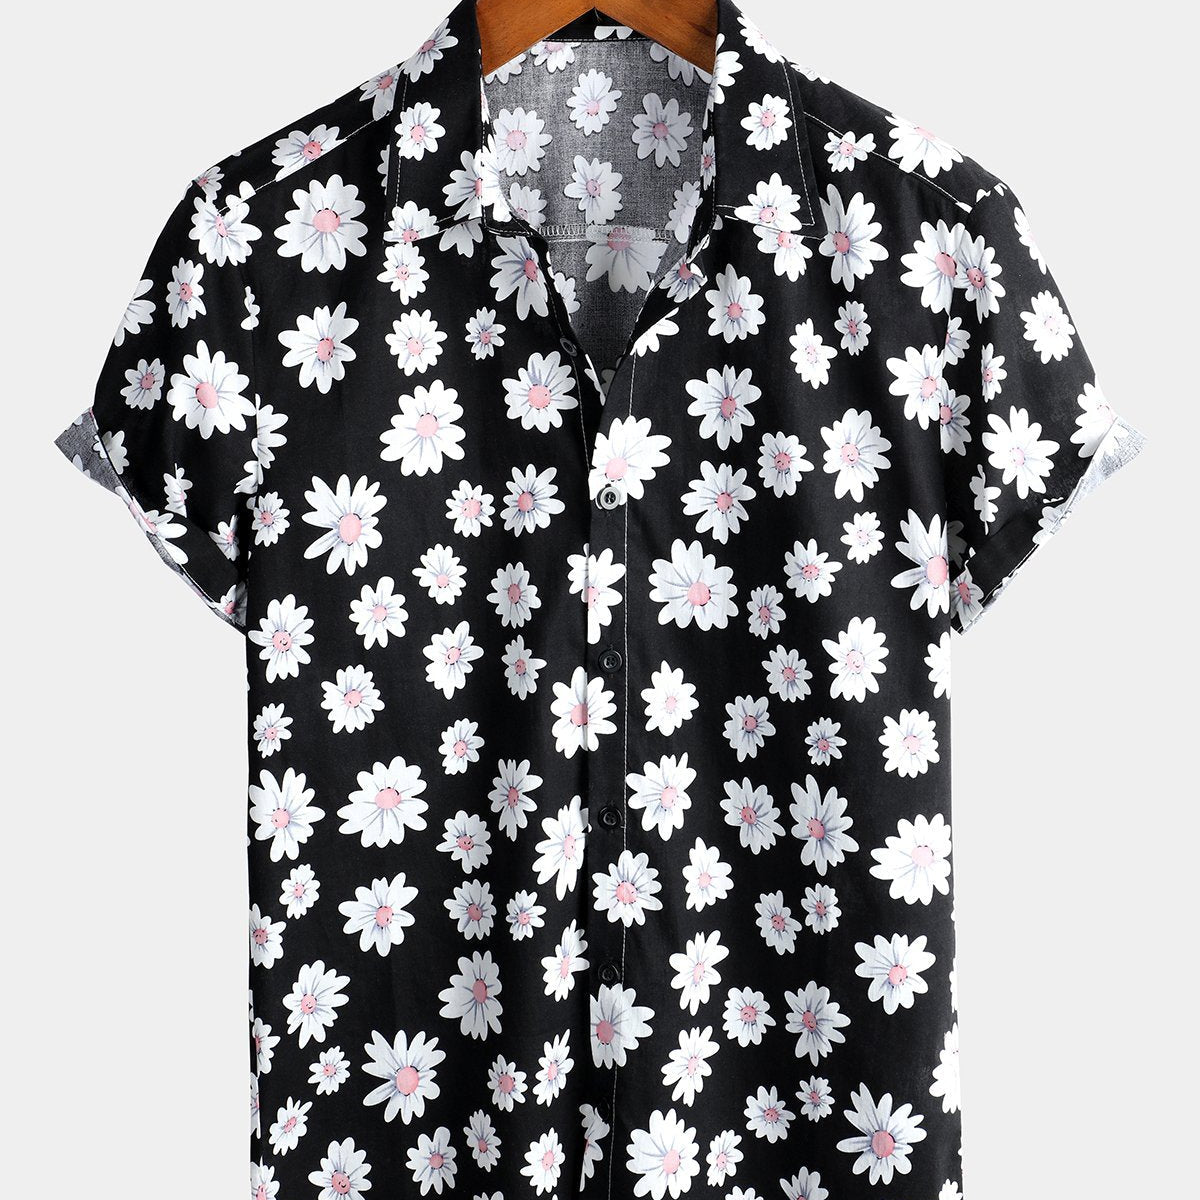 Herren Kurzärmliges Sommerhemd mit Gänseblümchen Blumenmuster